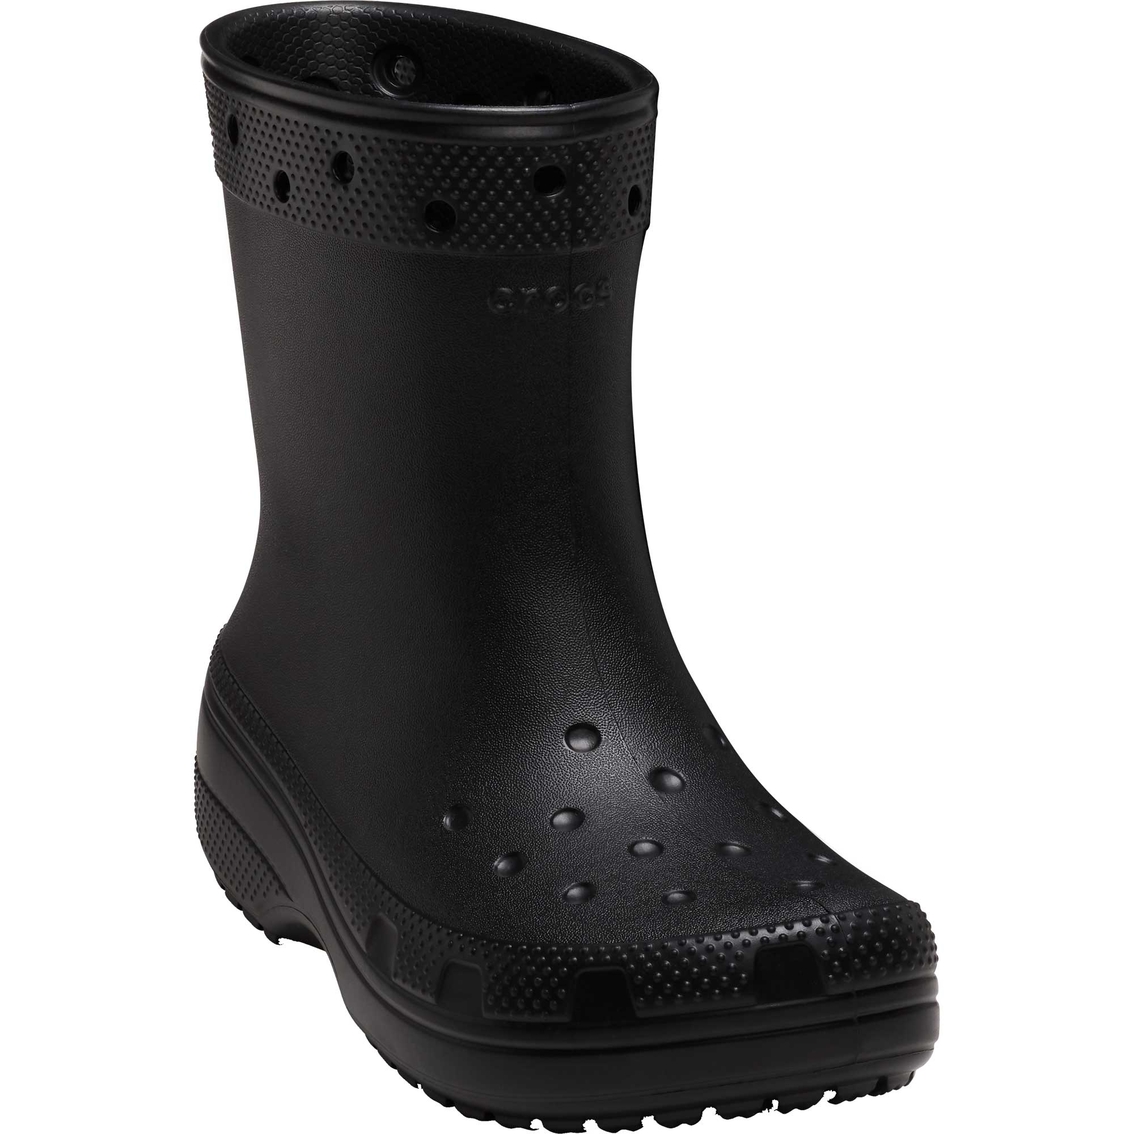 Crocs Women's Classic Rain Boots | Outdoor | Shoes | Shop The Exchange